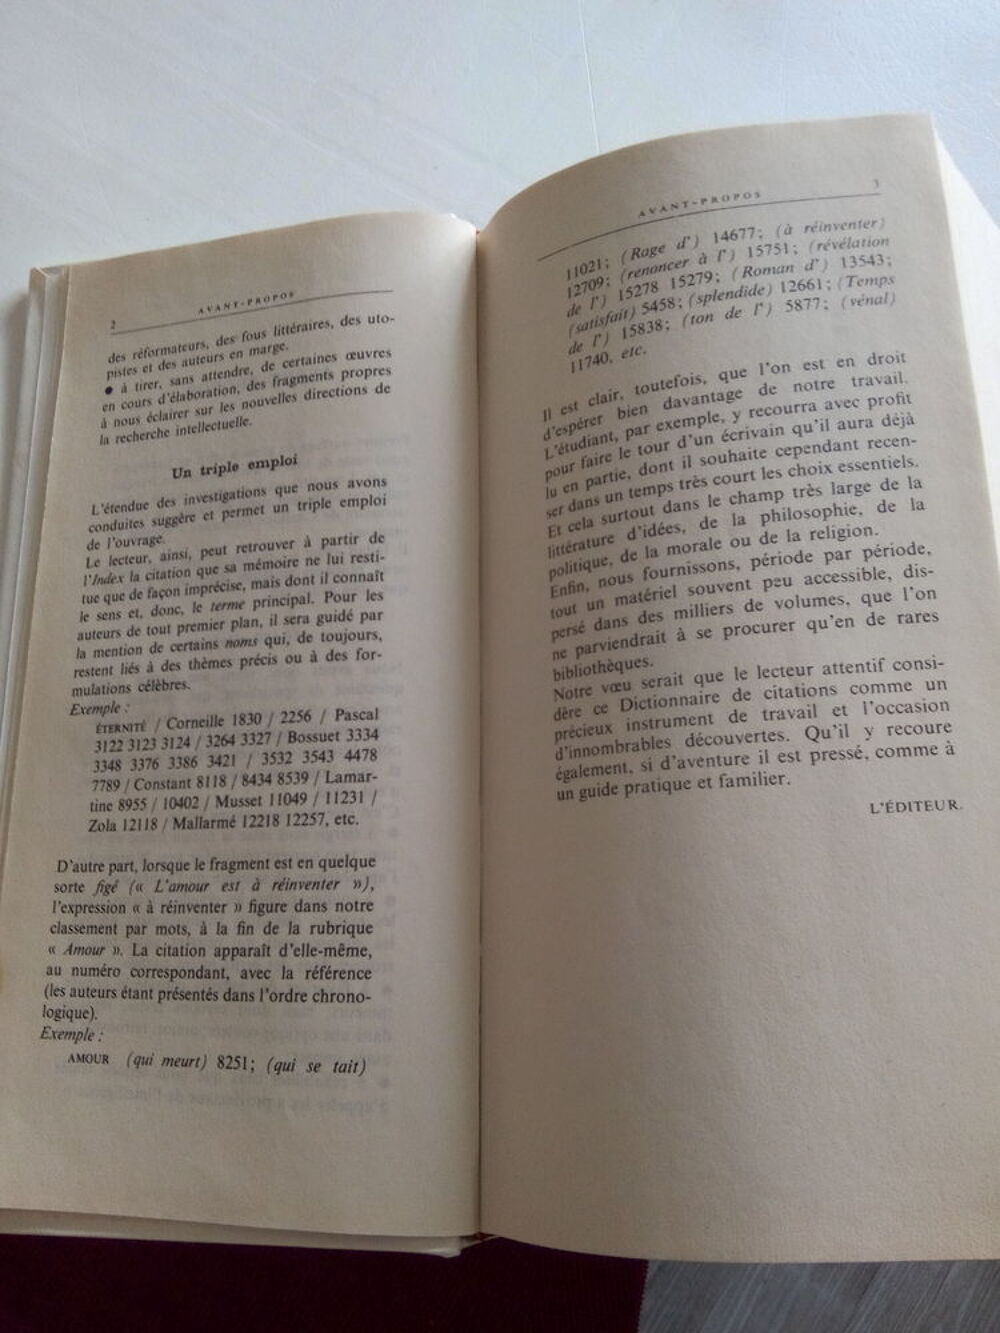 Dictionnaire des Citations fran&ccedil;aises Livres et BD